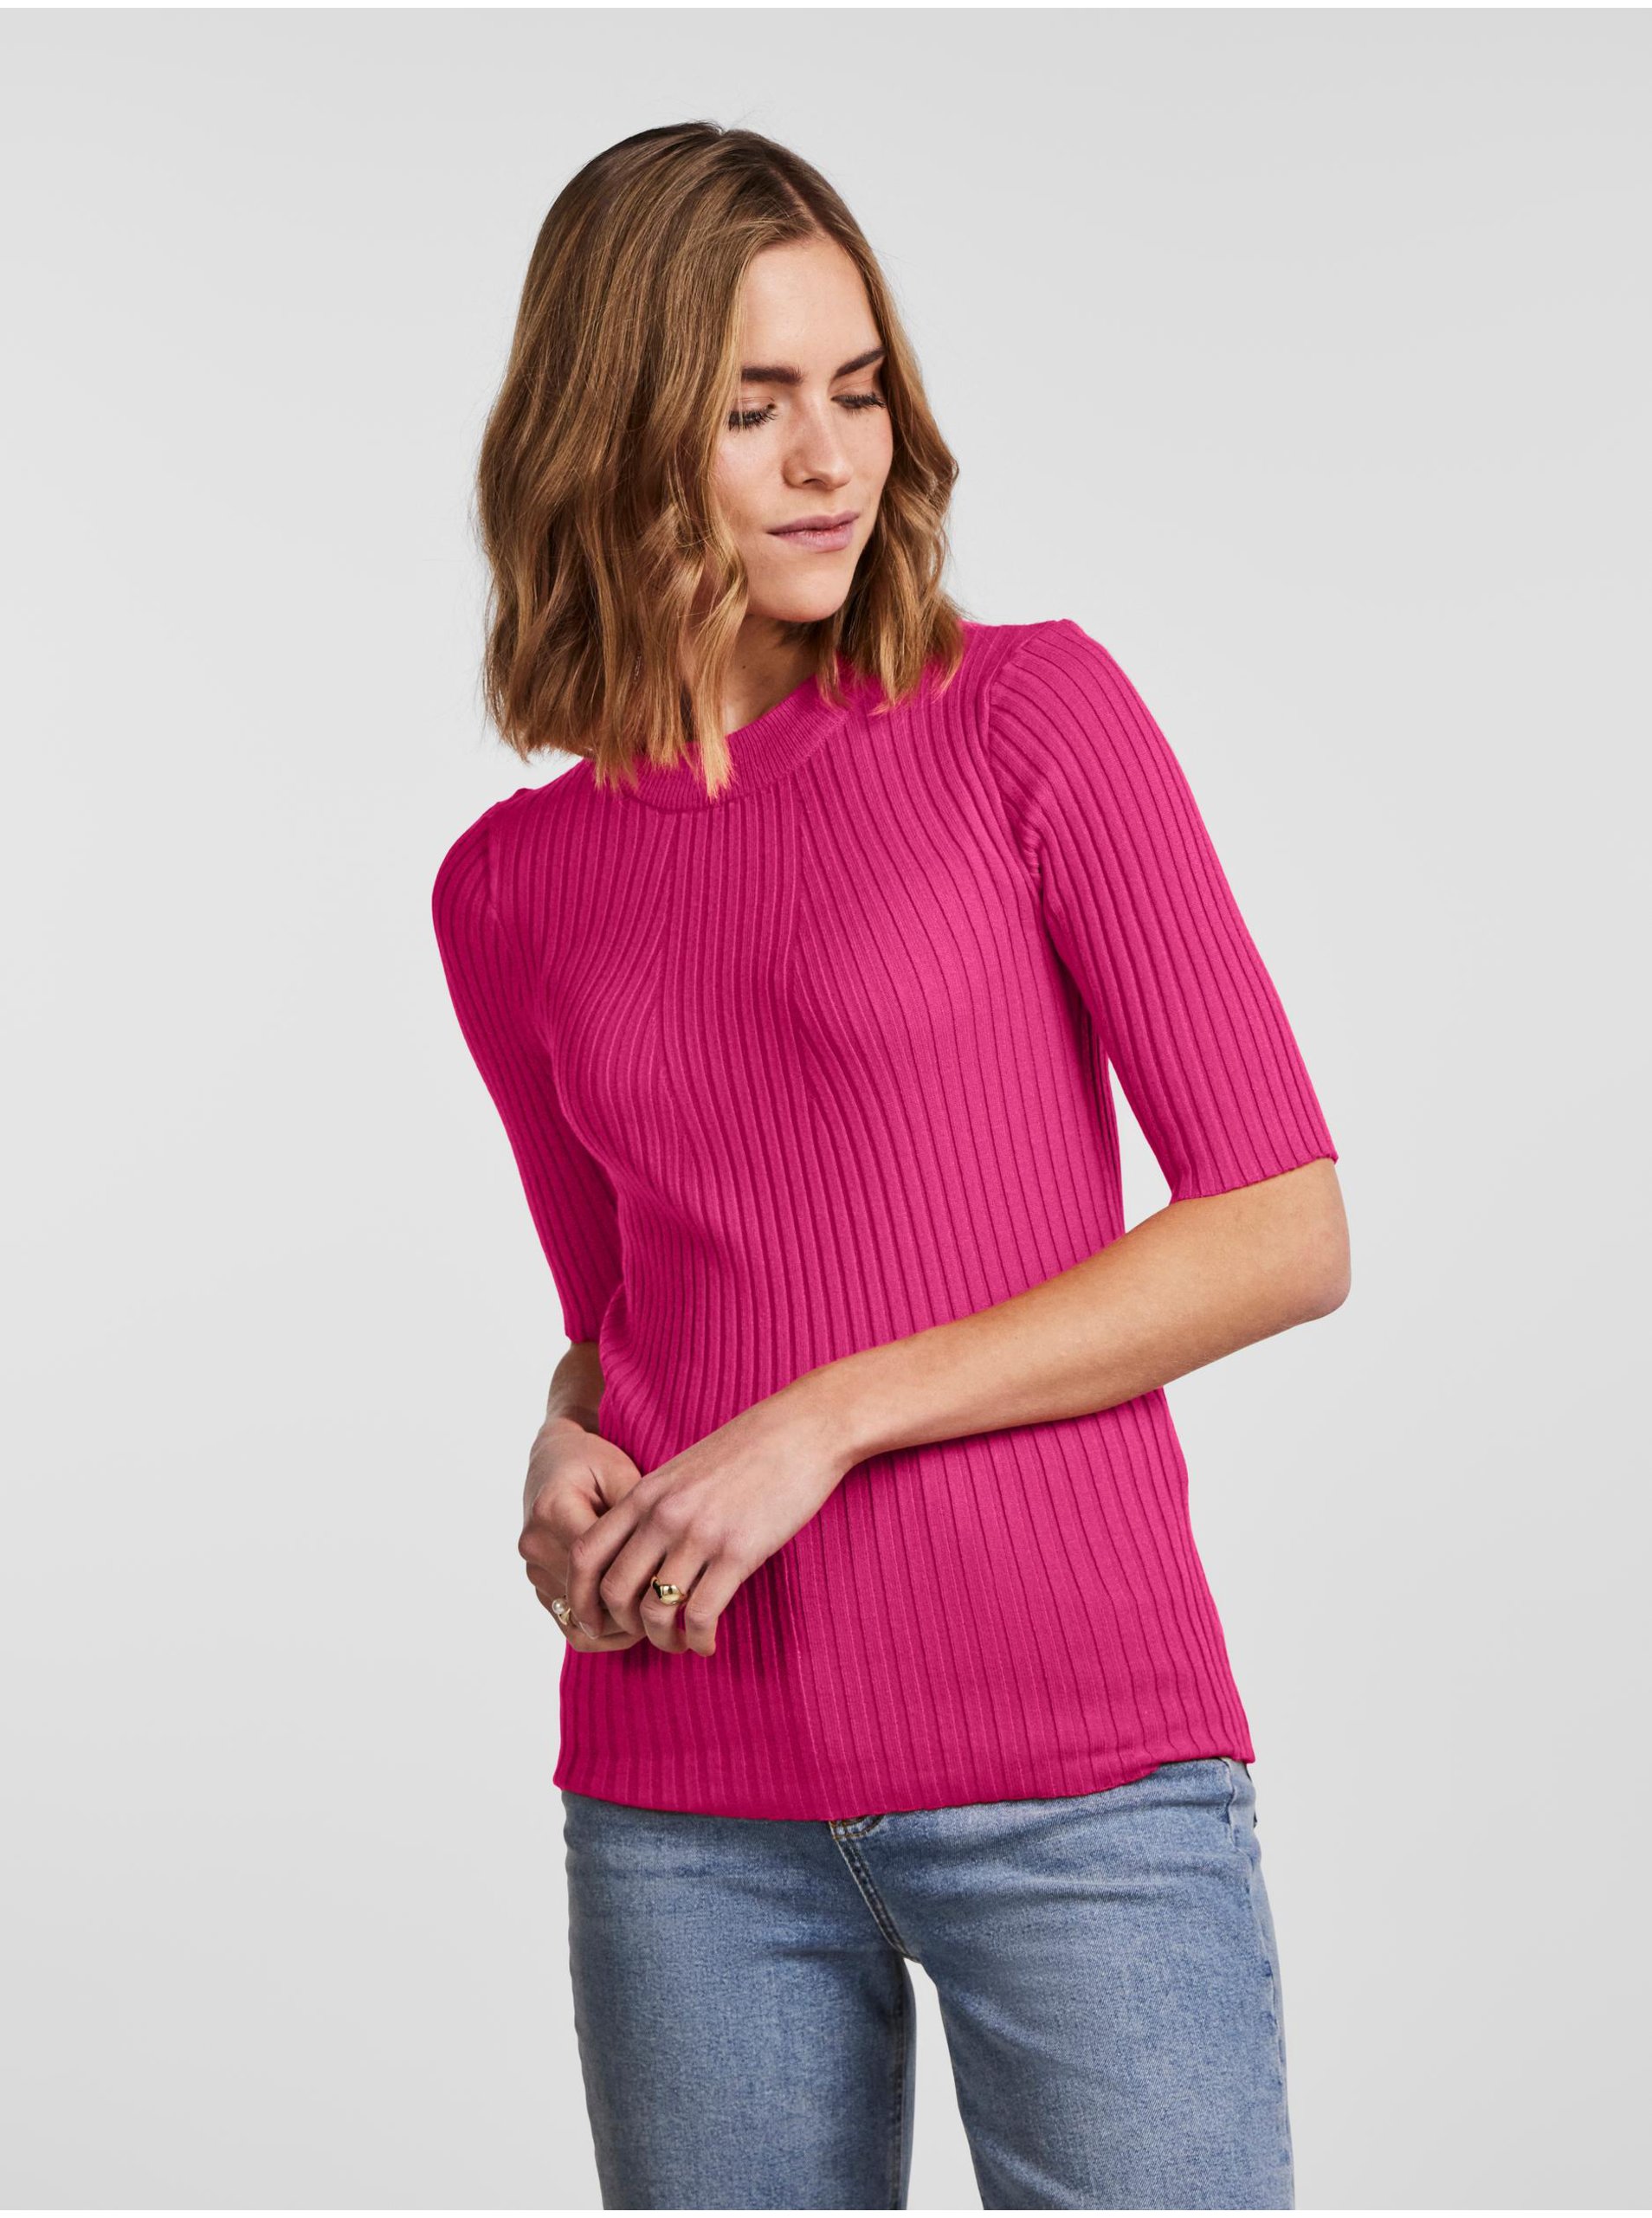 E-shop Tmavě růžový dámský žebrovaný lehký svetr Pieces Crista